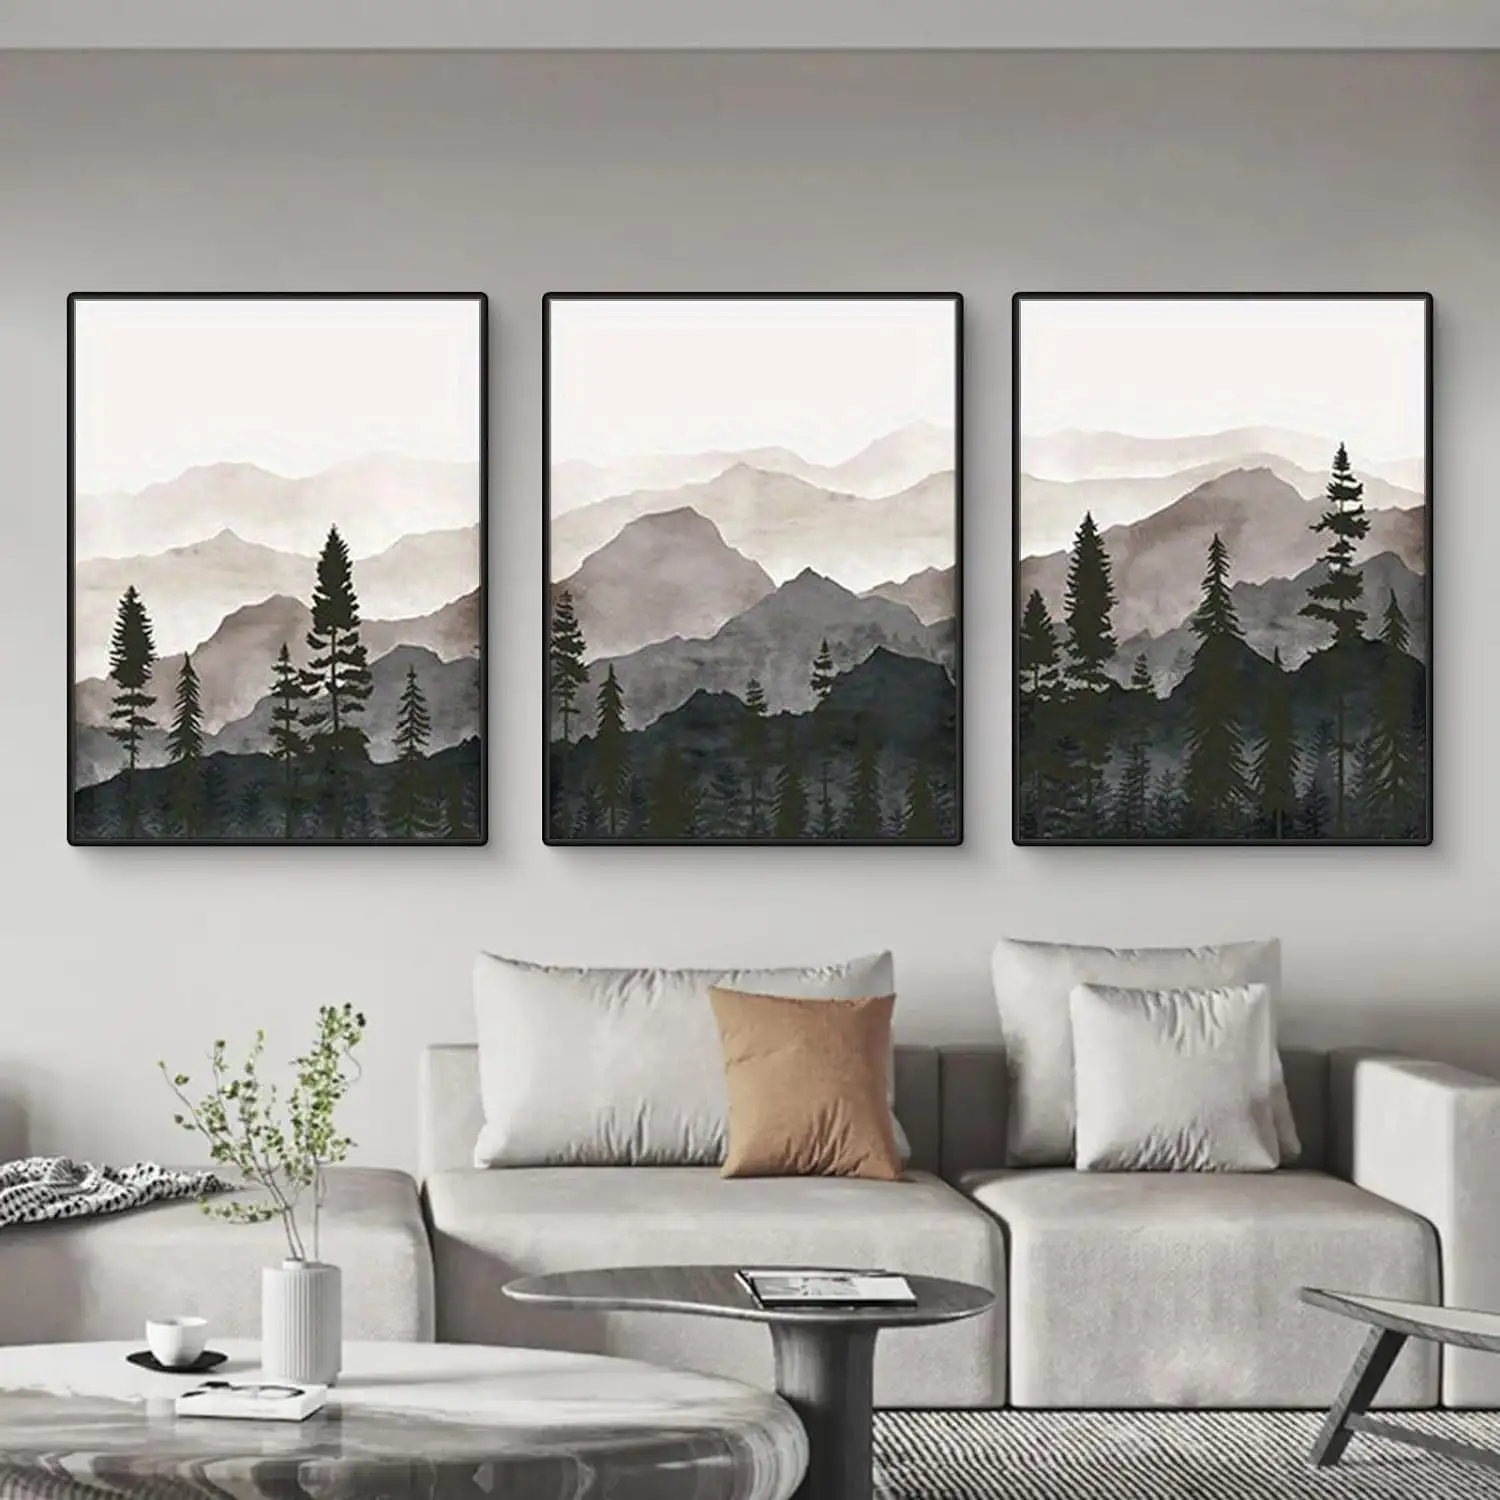 لوحة فنية حديثة بألوان الحد الأدنى مرسوم عليها جبال ذات منظر غابات رمادية على الطراز الشمال أوروبي لوحة ثلاثية الأبعاد لديكور شقة فندق